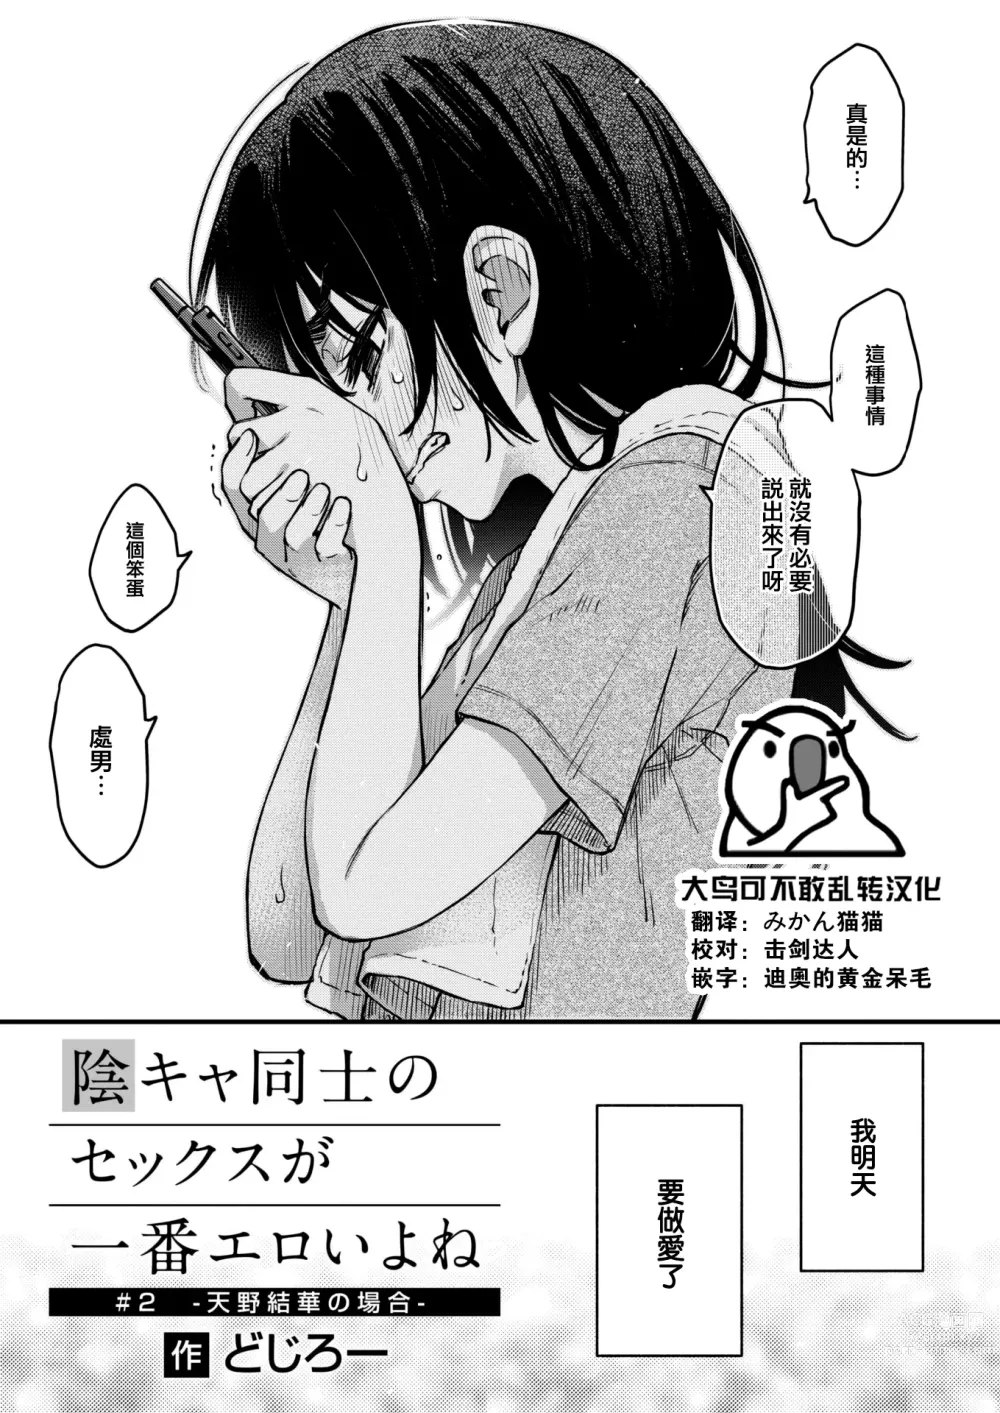 Page 1 of manga InCha Doushi no Sex ga Ichiban Eroiyo ne #2 -Amano Yuka no Baai-